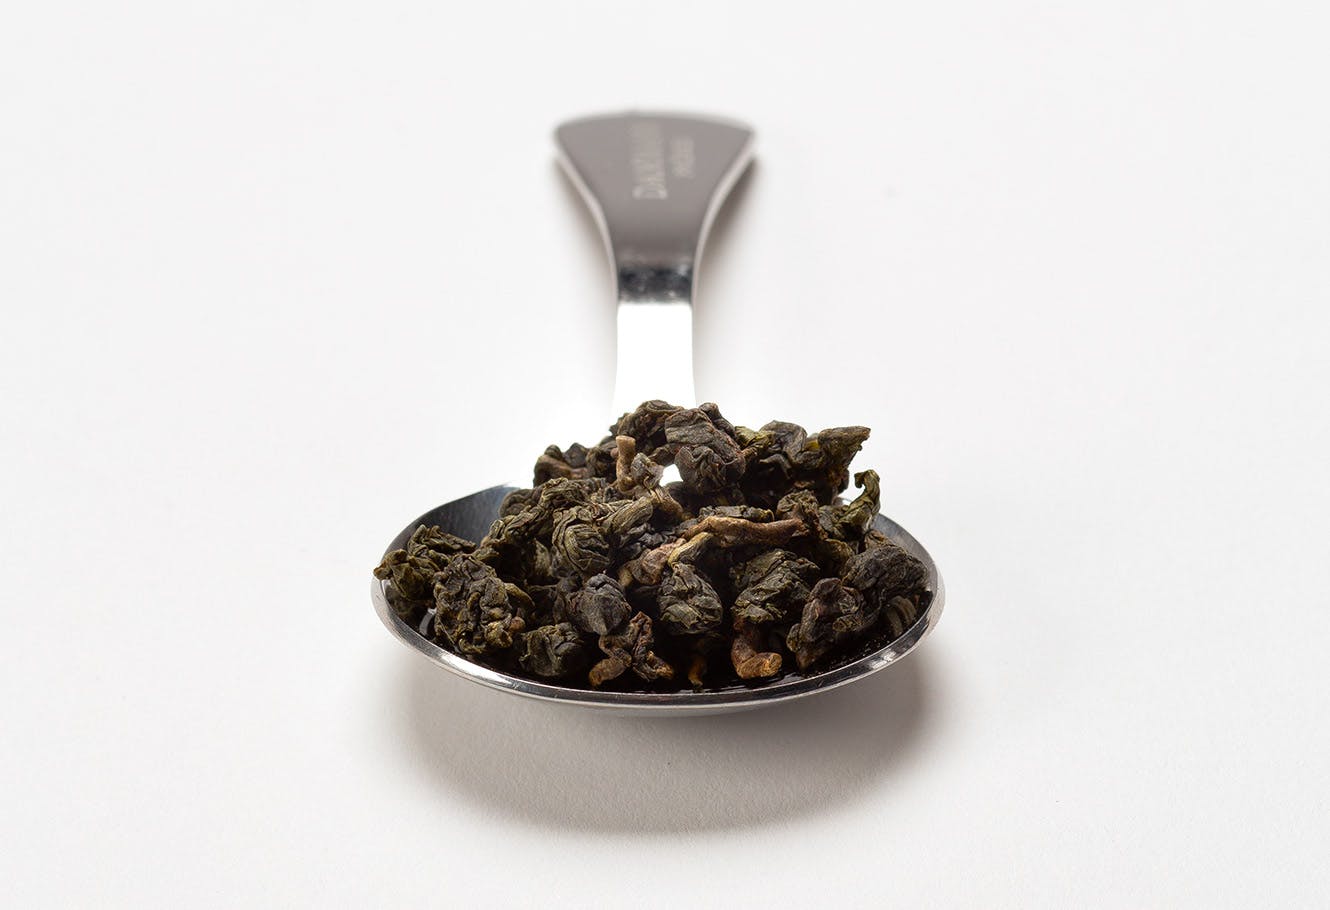 Cuillère à mesurer en acier inoxydable avec du thé oolong en vrac.